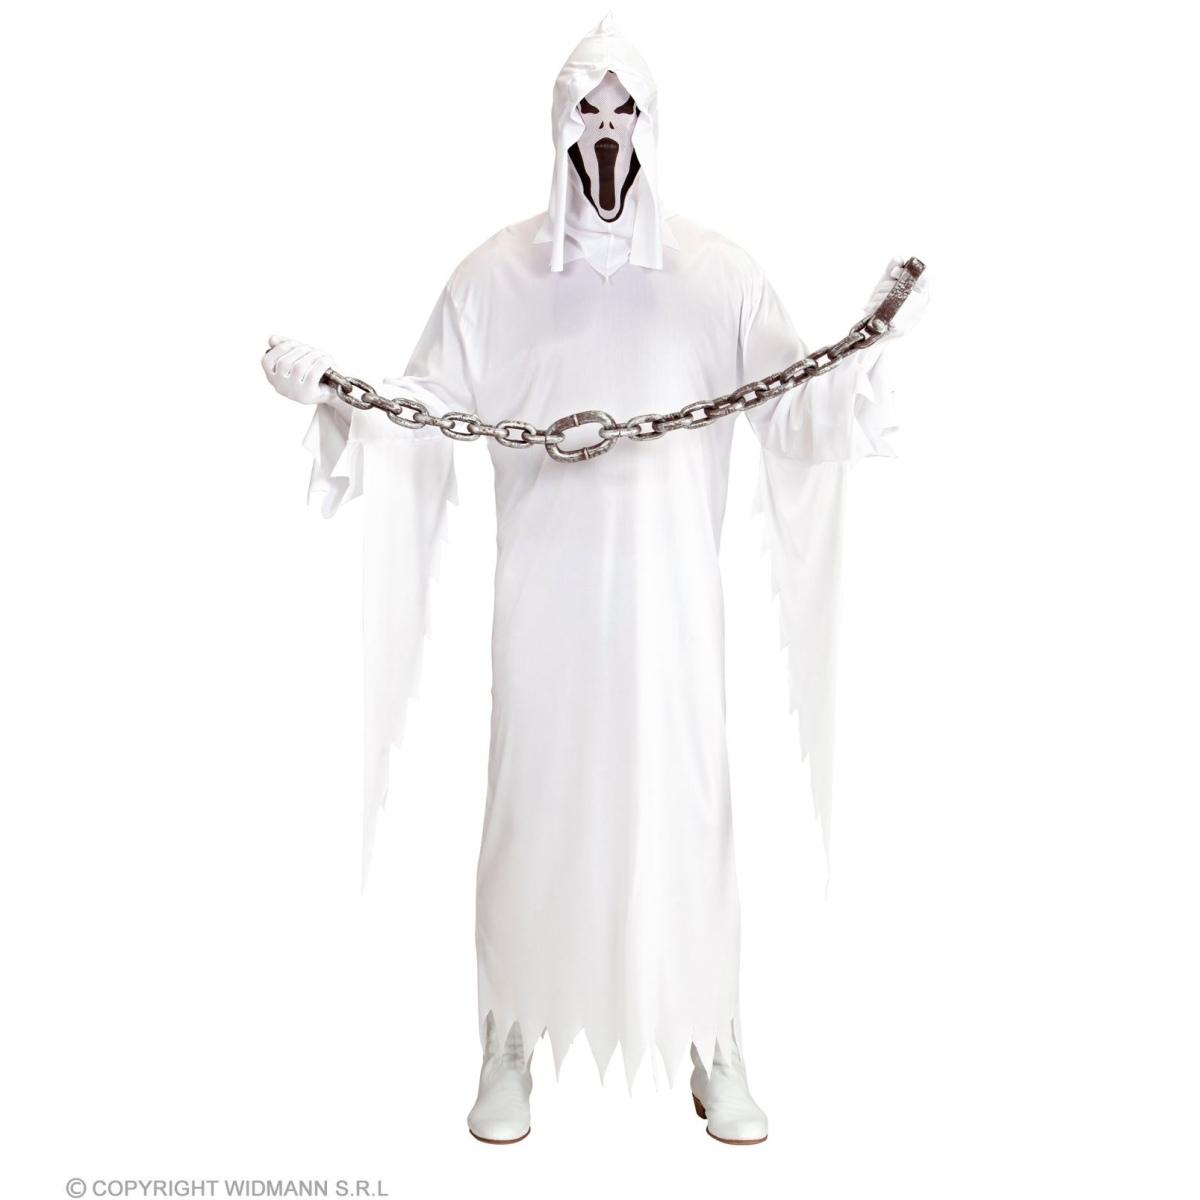 Scegli il Costume da Fantasma con Cappuccio Uomo su M2 Store per il tuo  Halloween speciale!